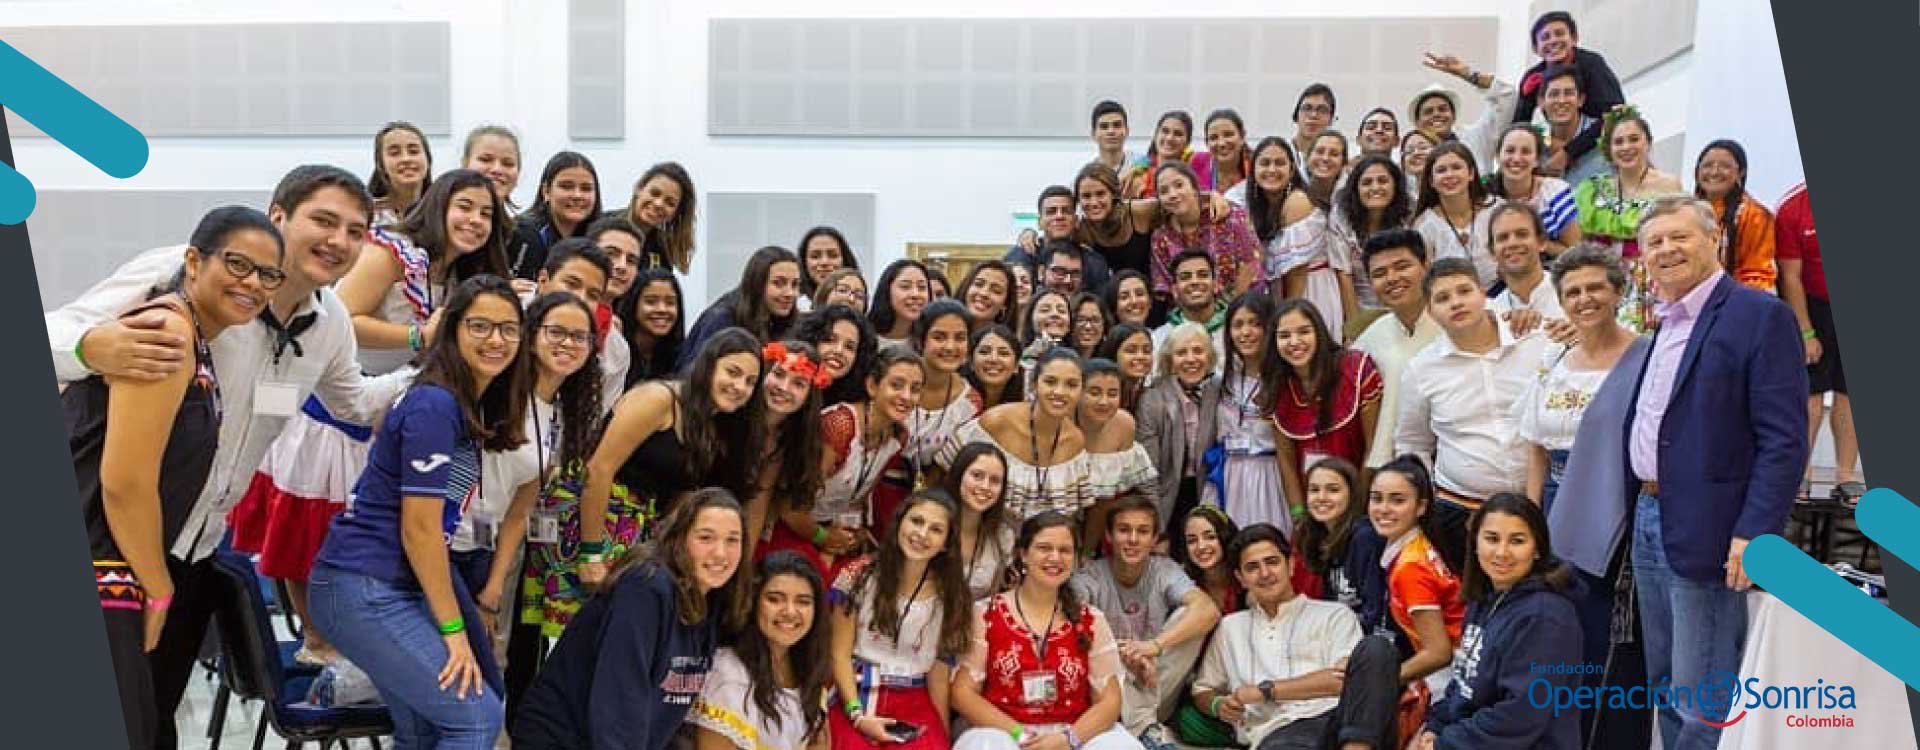 Club de Estudiantes en Operación Sonrisa Colombia